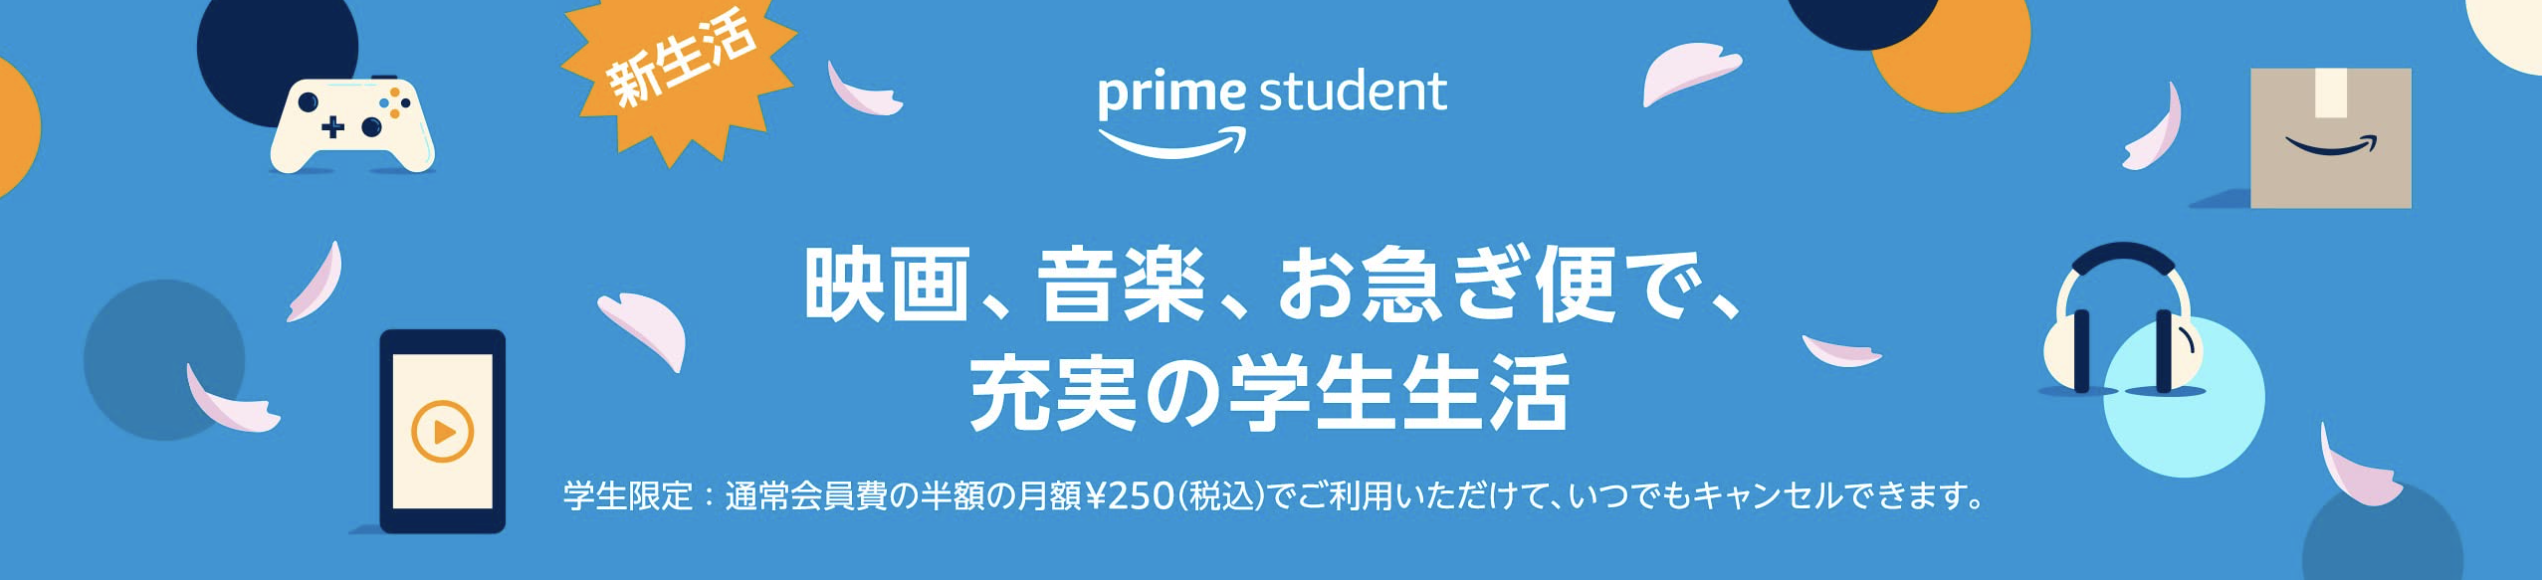 Amazon prime studentの特典8選